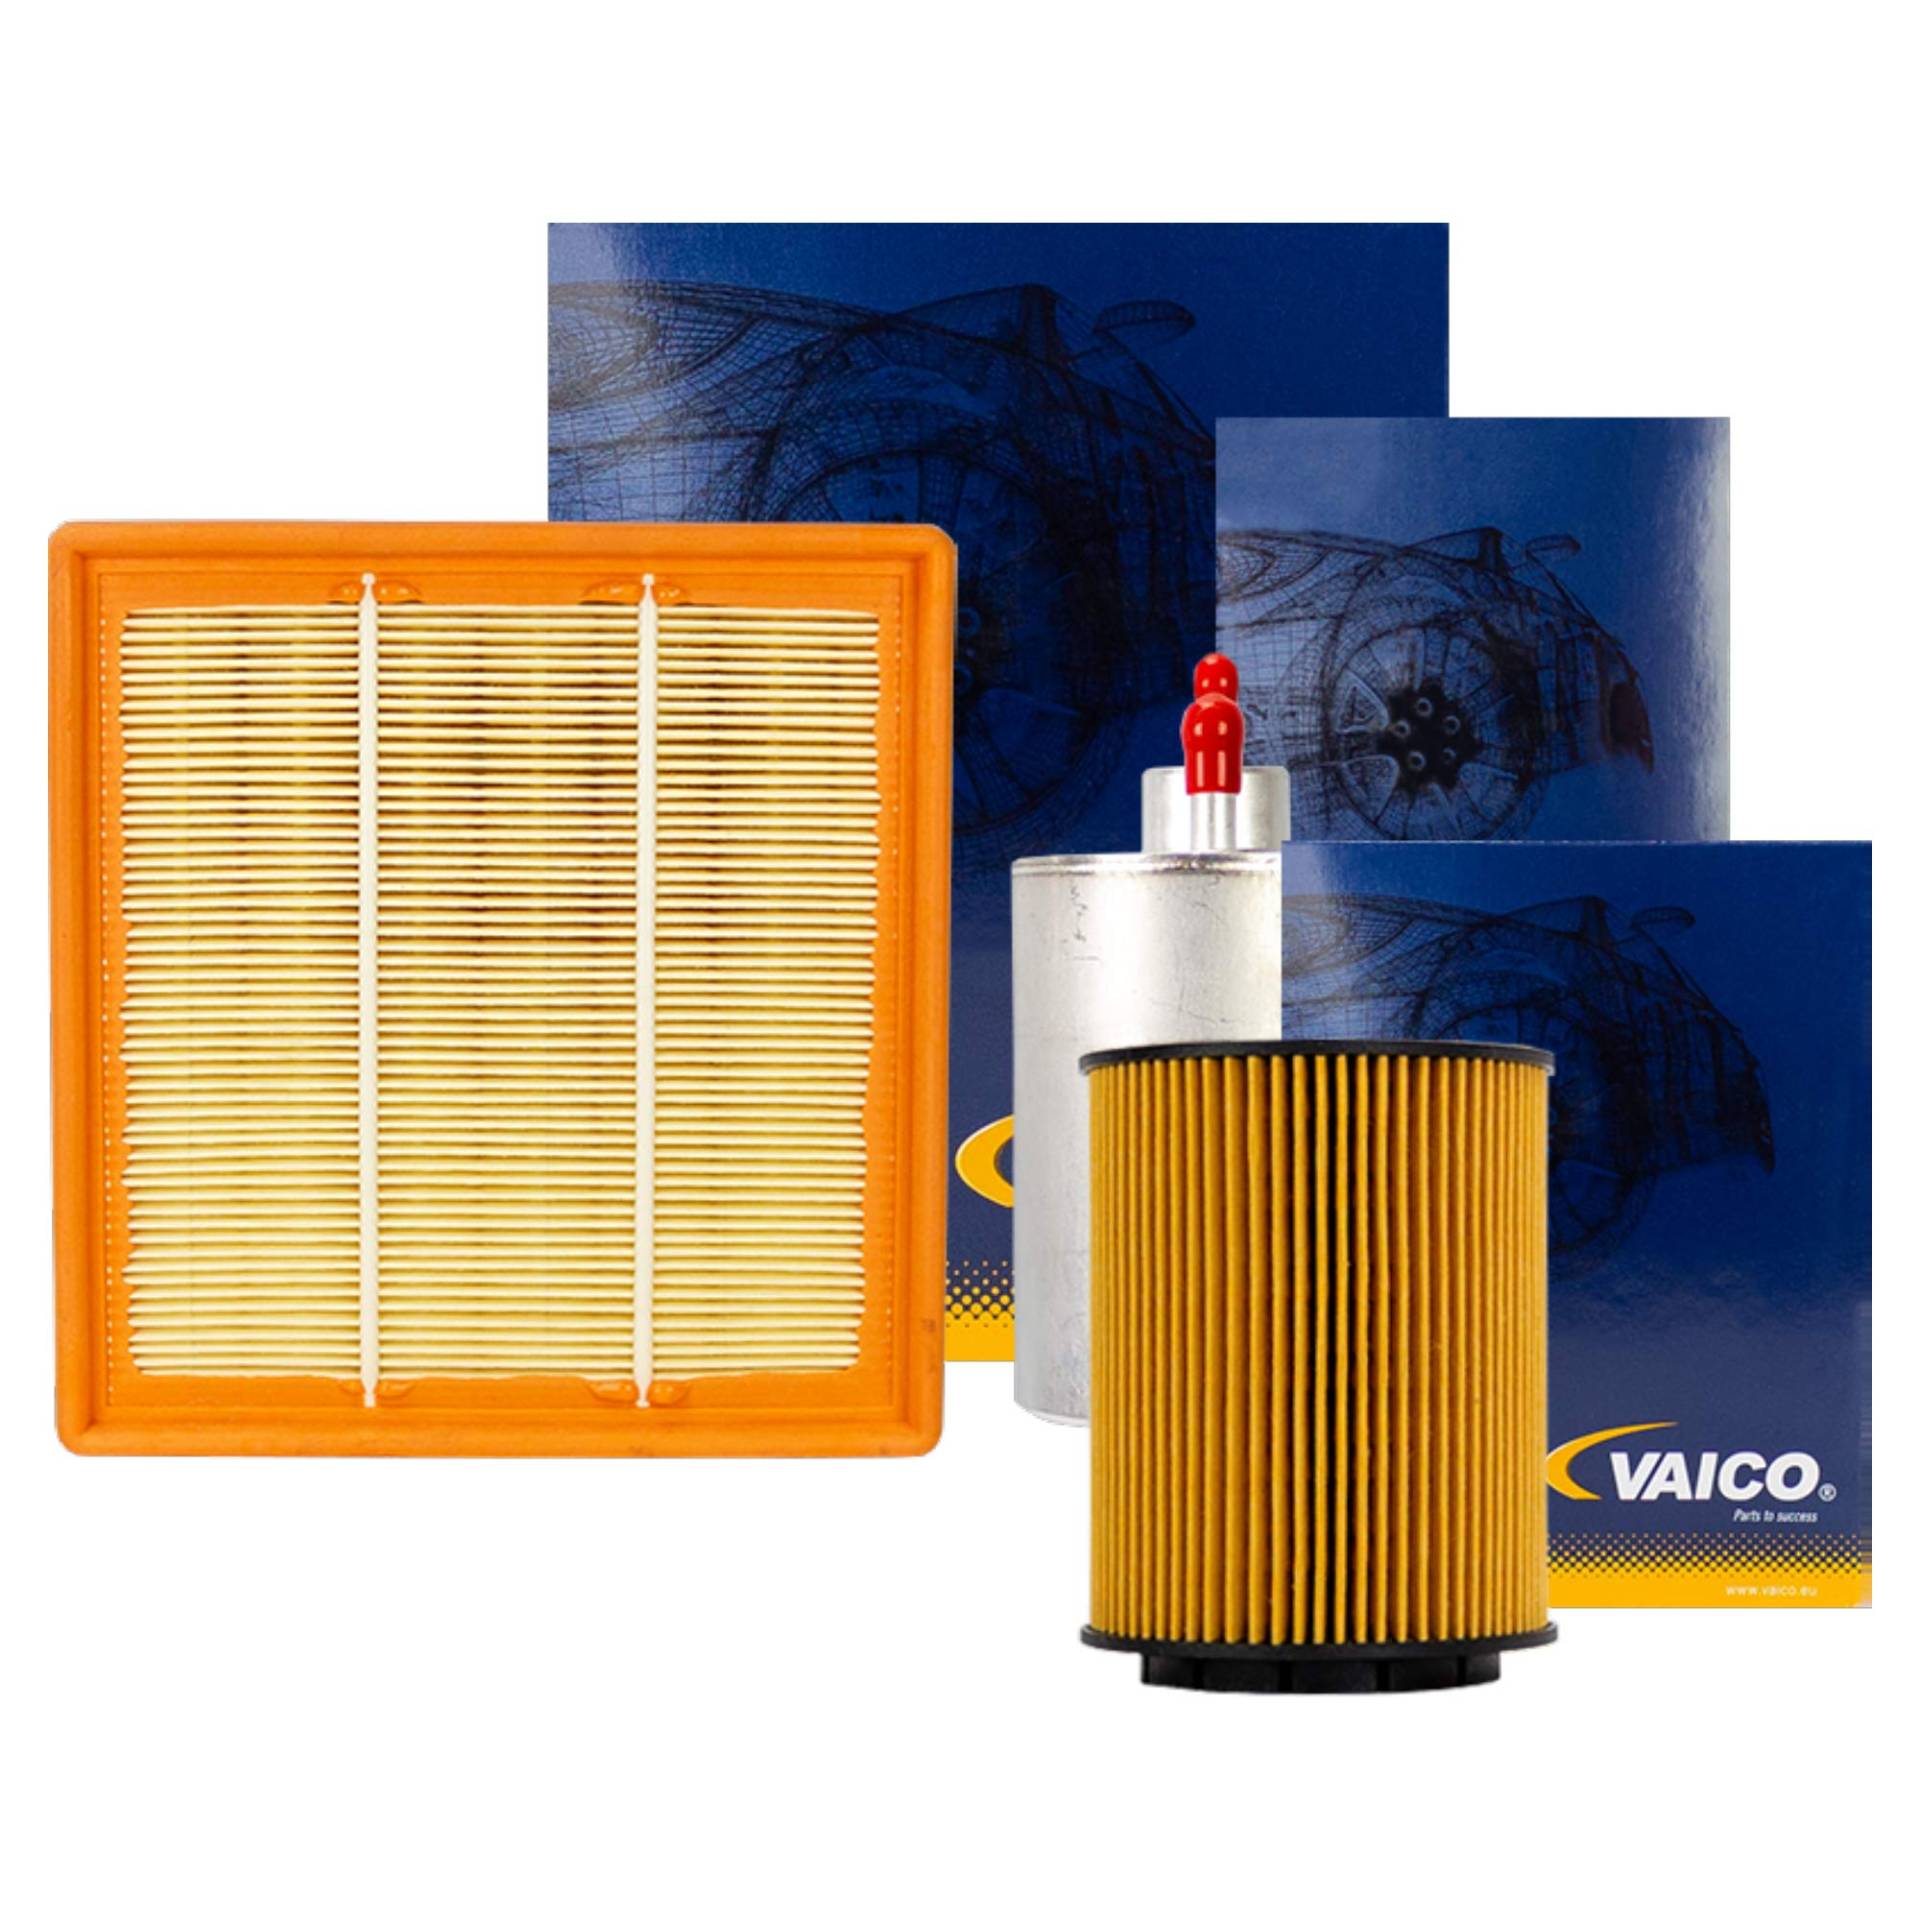 Vaico Filter Set Komplett Ölfilter Luftfilter Kraftstofffilter von VAICO